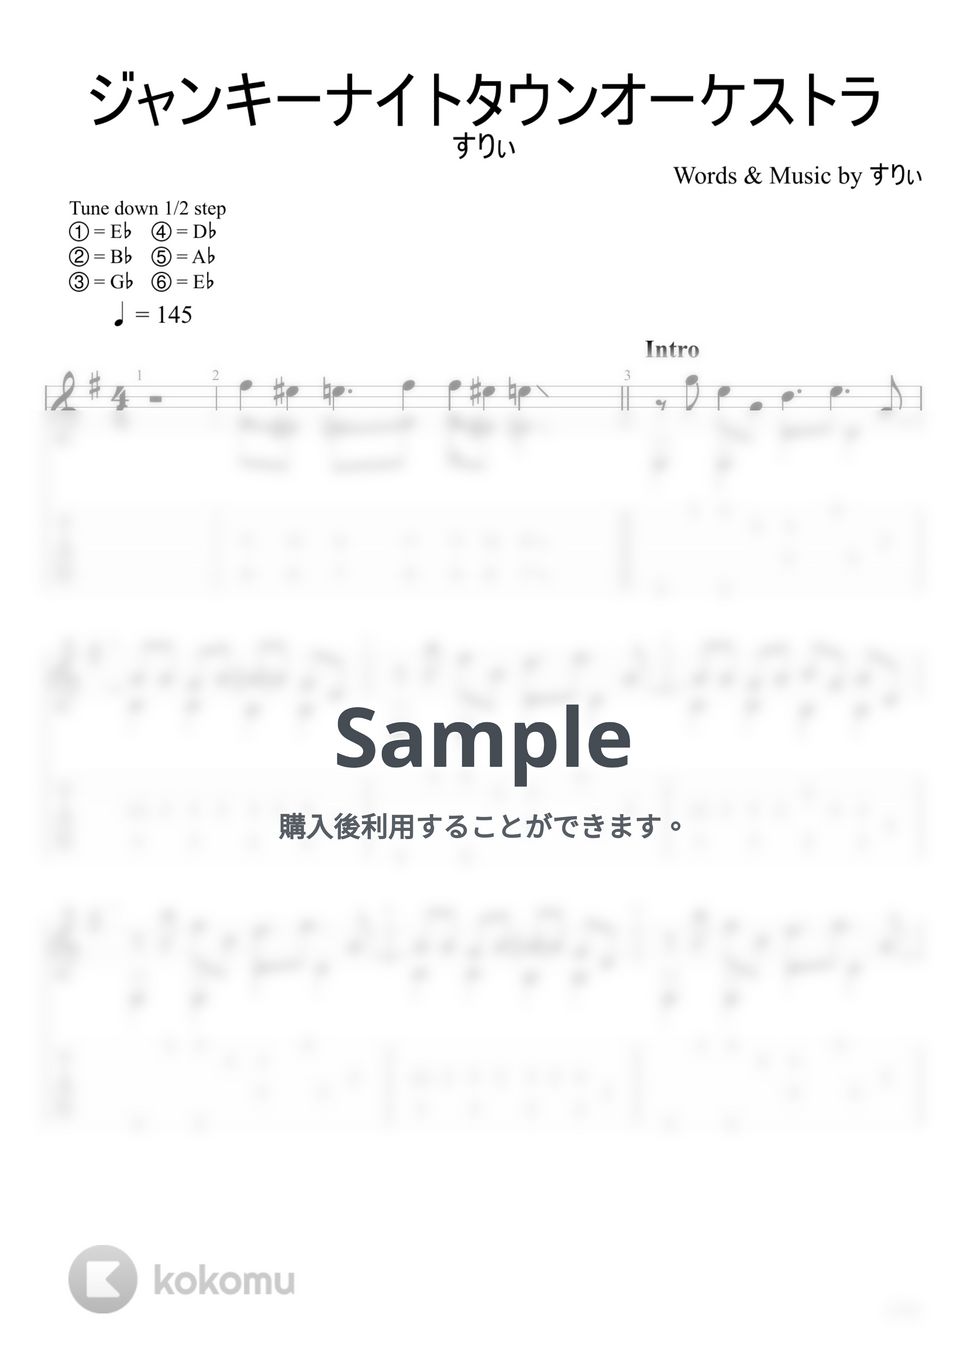 すりぃ - ジャンキーナイトタウンオーケストラ (ソロギター) by u3danchou